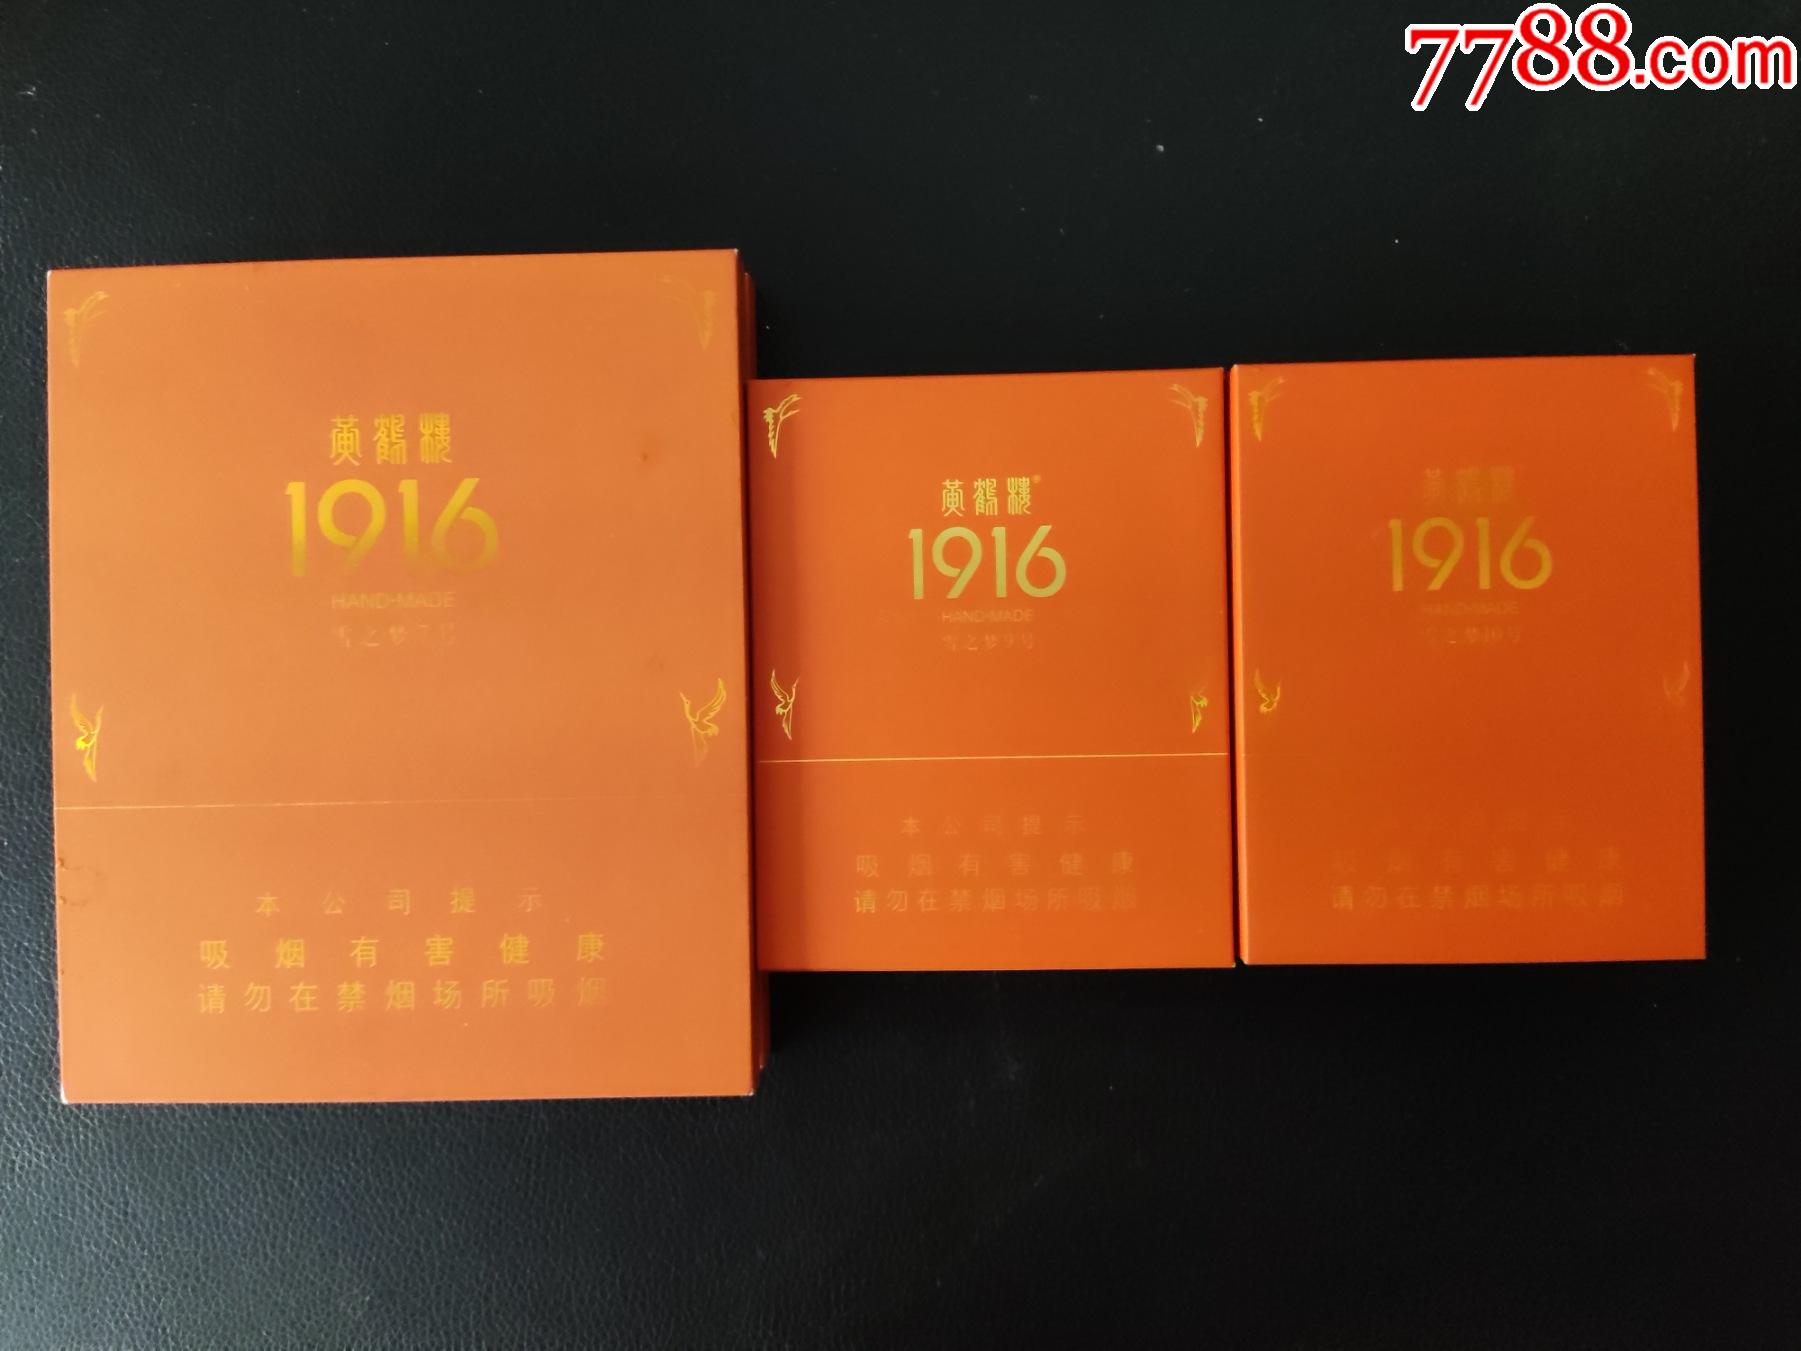 【黄鹤楼1916雪之梦7,9,10号】5支雪茄盒3种